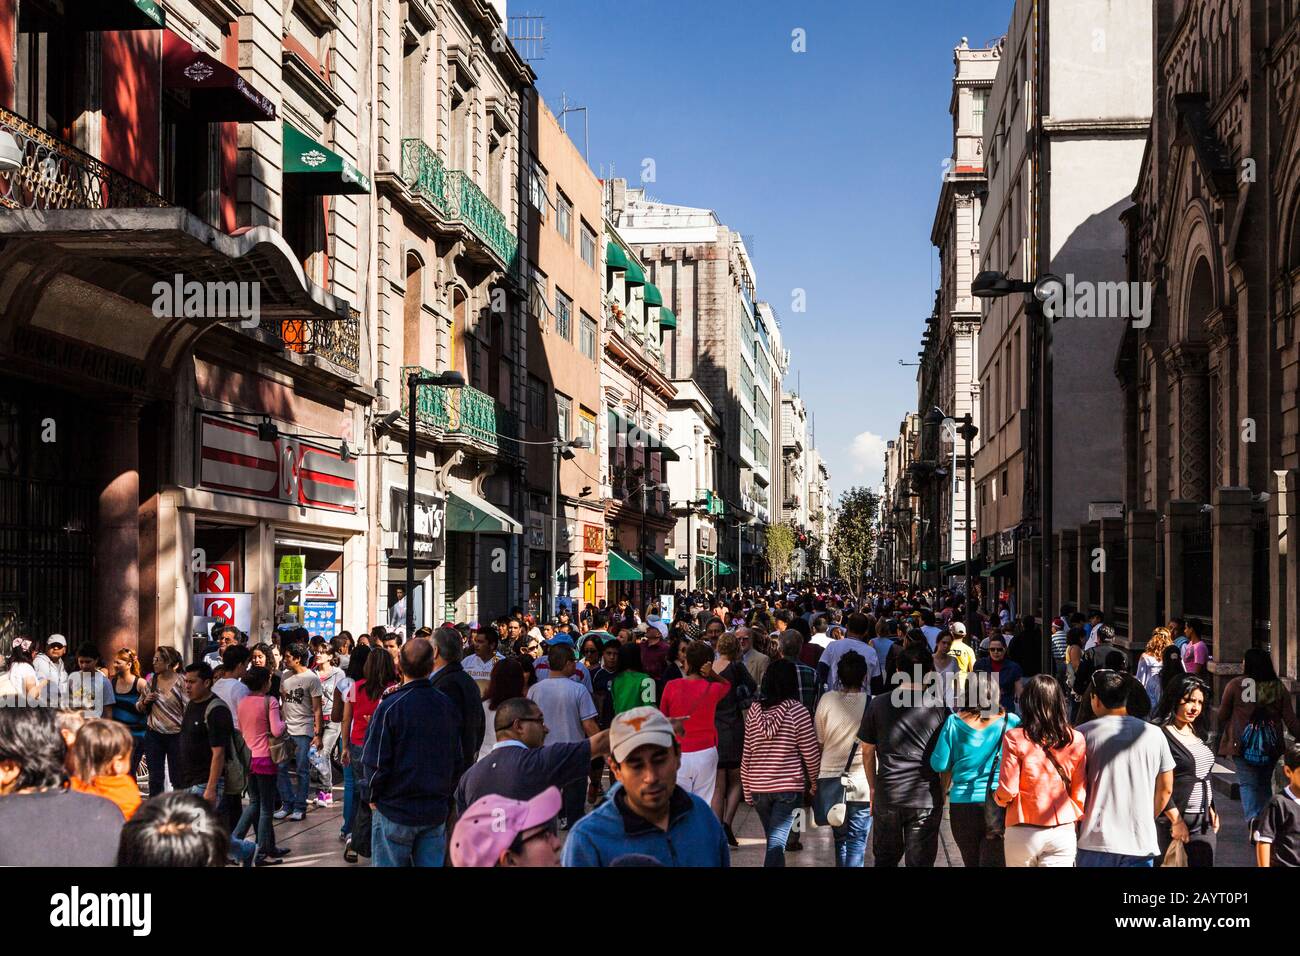 Old down town near zocalo, city center, Mexico City, Mexico, Central America Stock Photo